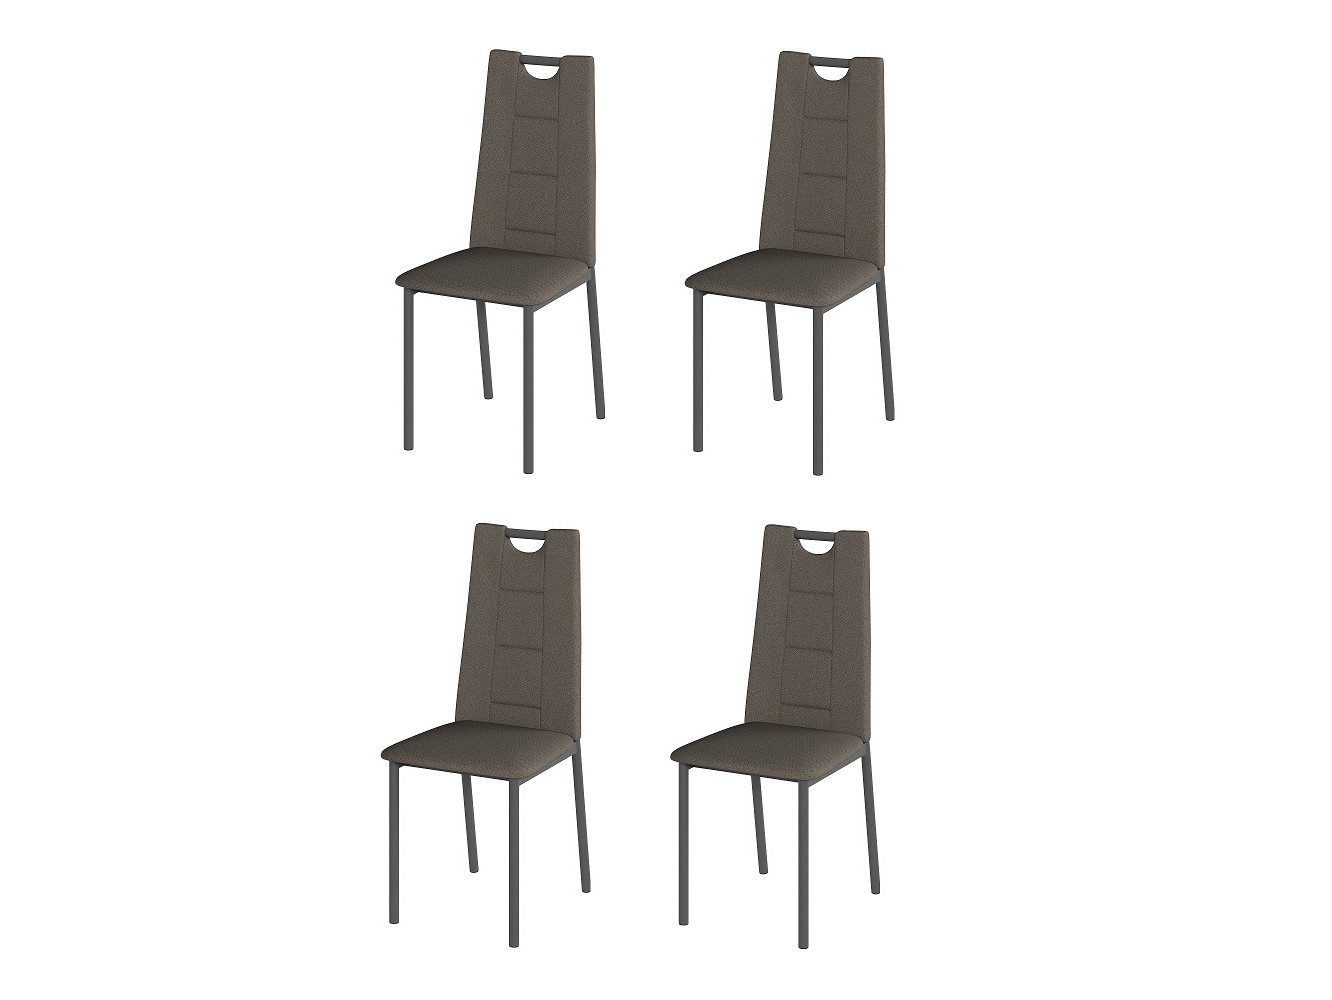 банкетка мебелик диана венге рогожка коричневая п0004620 Комплект стульев Орлеан (4 шт), графит рогожка коричневая Коричневый, Металл